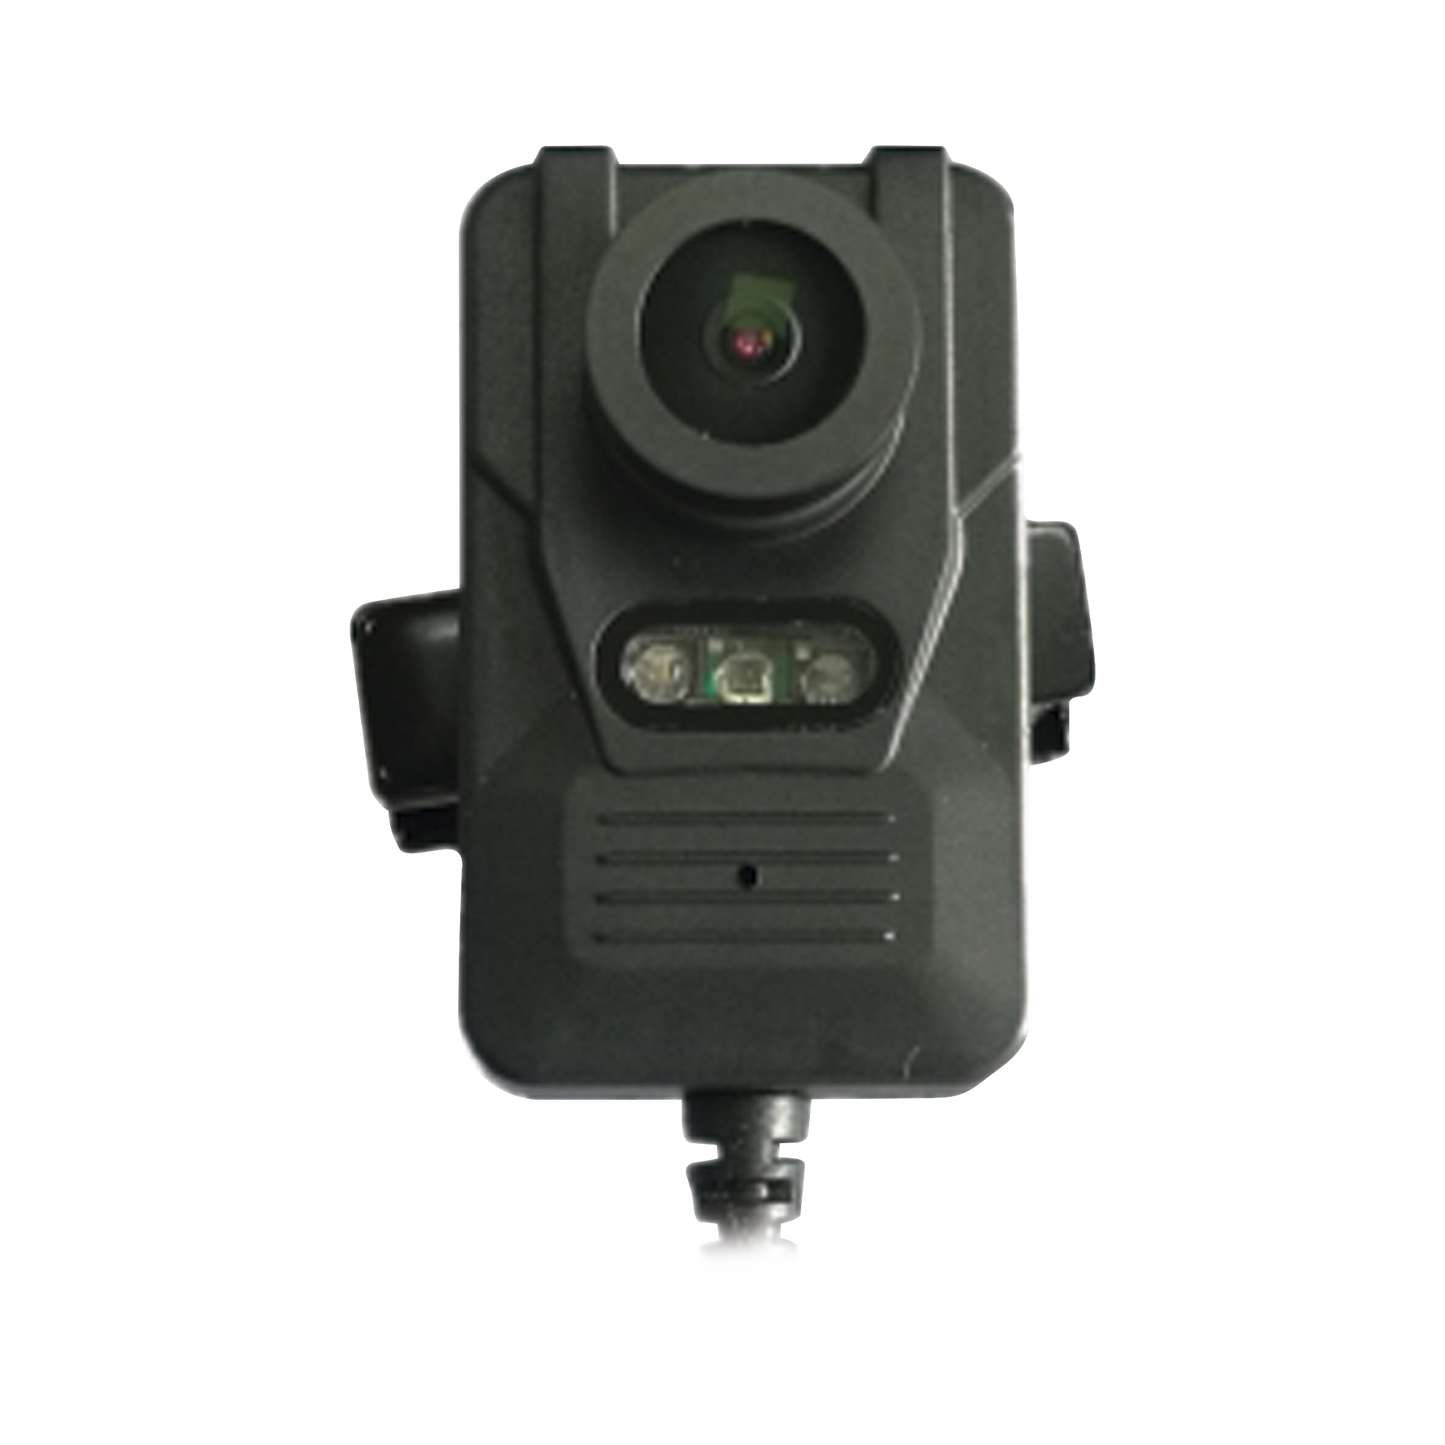 Camara externa compatible con bodycam modelo XMRR3